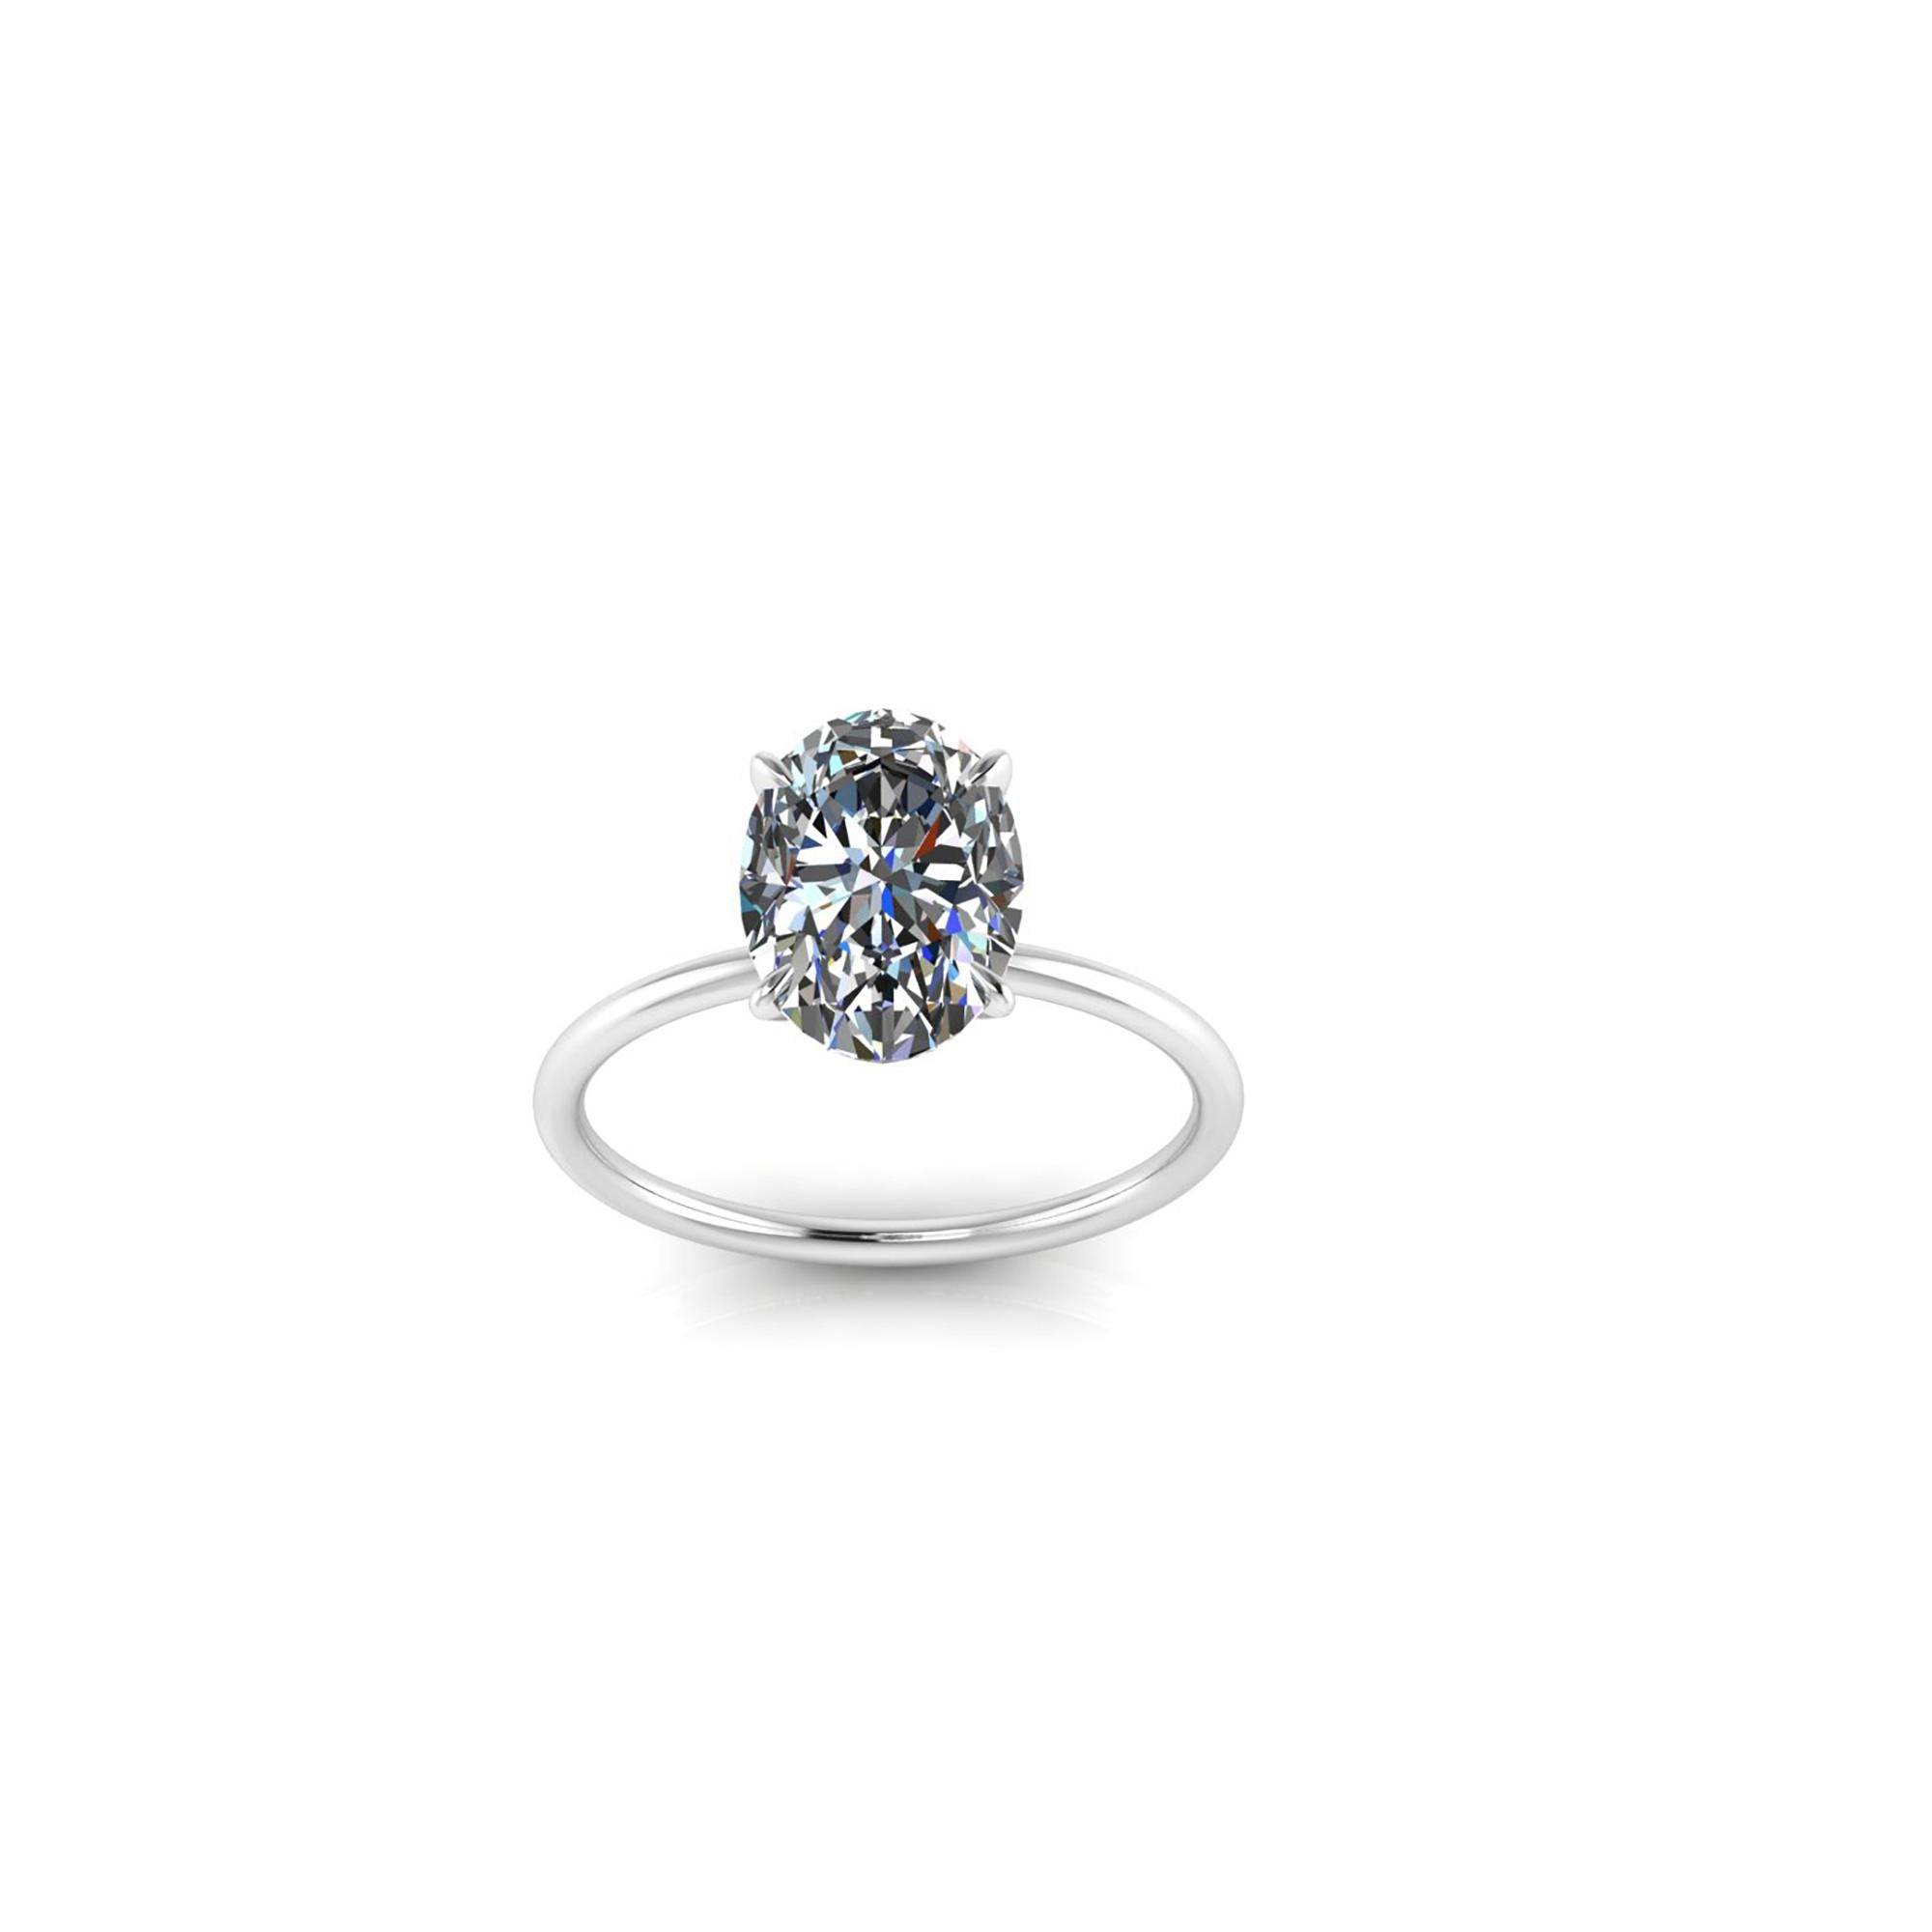 GIA-zertifizierter ovaler Diamant von 2,01 Karat, Farbe G, Reinheit VS1, ein Diamant von höherer Qualität für ein Maximum an Helligkeit.
Er ist in eine niedrige, dünne Fassung aus Platin 950 gefasst, minimalistisch und fein, um den Diamanten